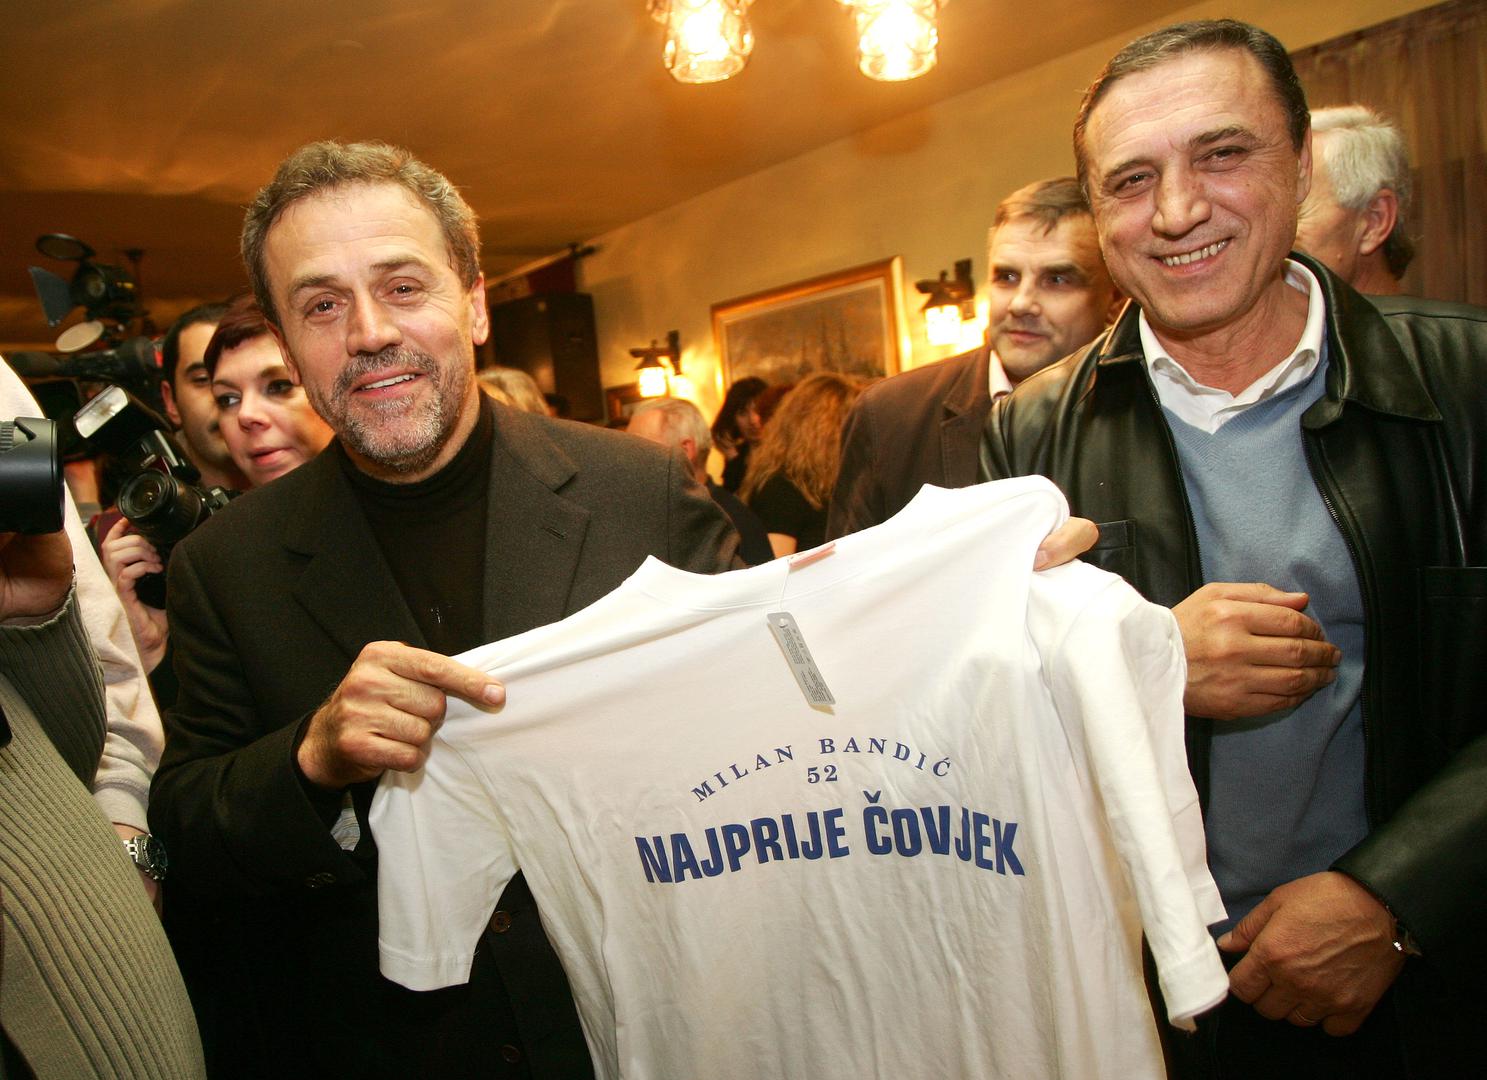 22.11.2007. Zagreb - U restoranu Skenderica gradonačelnik Milan Bandić s prijateljima je tada proslavio svoj 52. rođendan